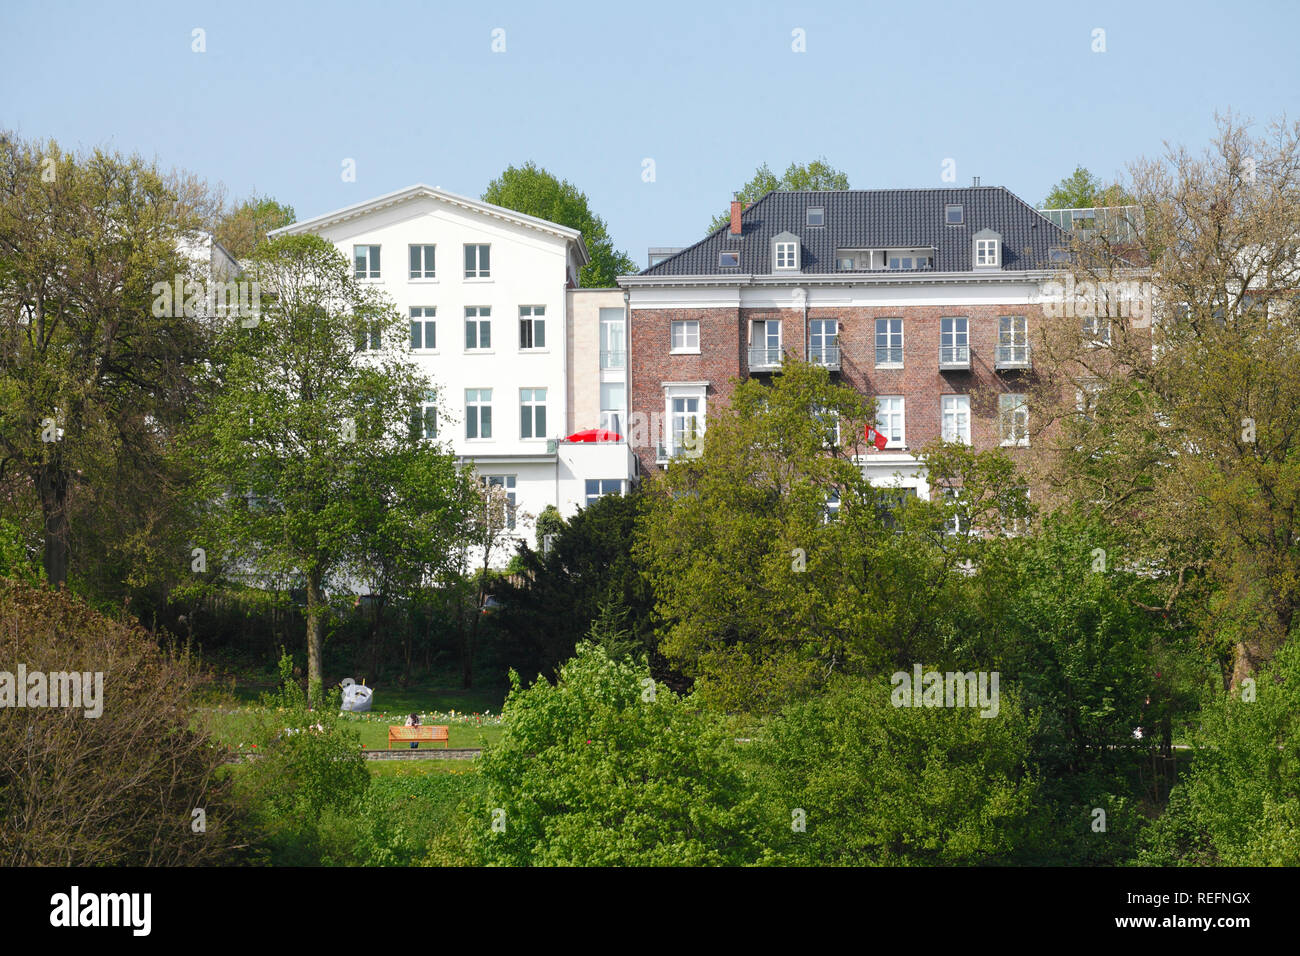 Bâtiment résidentiel sur la rive de l'Elbe, Altona, Hambourg, Allemagne, Europe Je suis Wohngebäude Elbufer, Altona, Hambourg, Deutschland, Europa I Banque D'Images